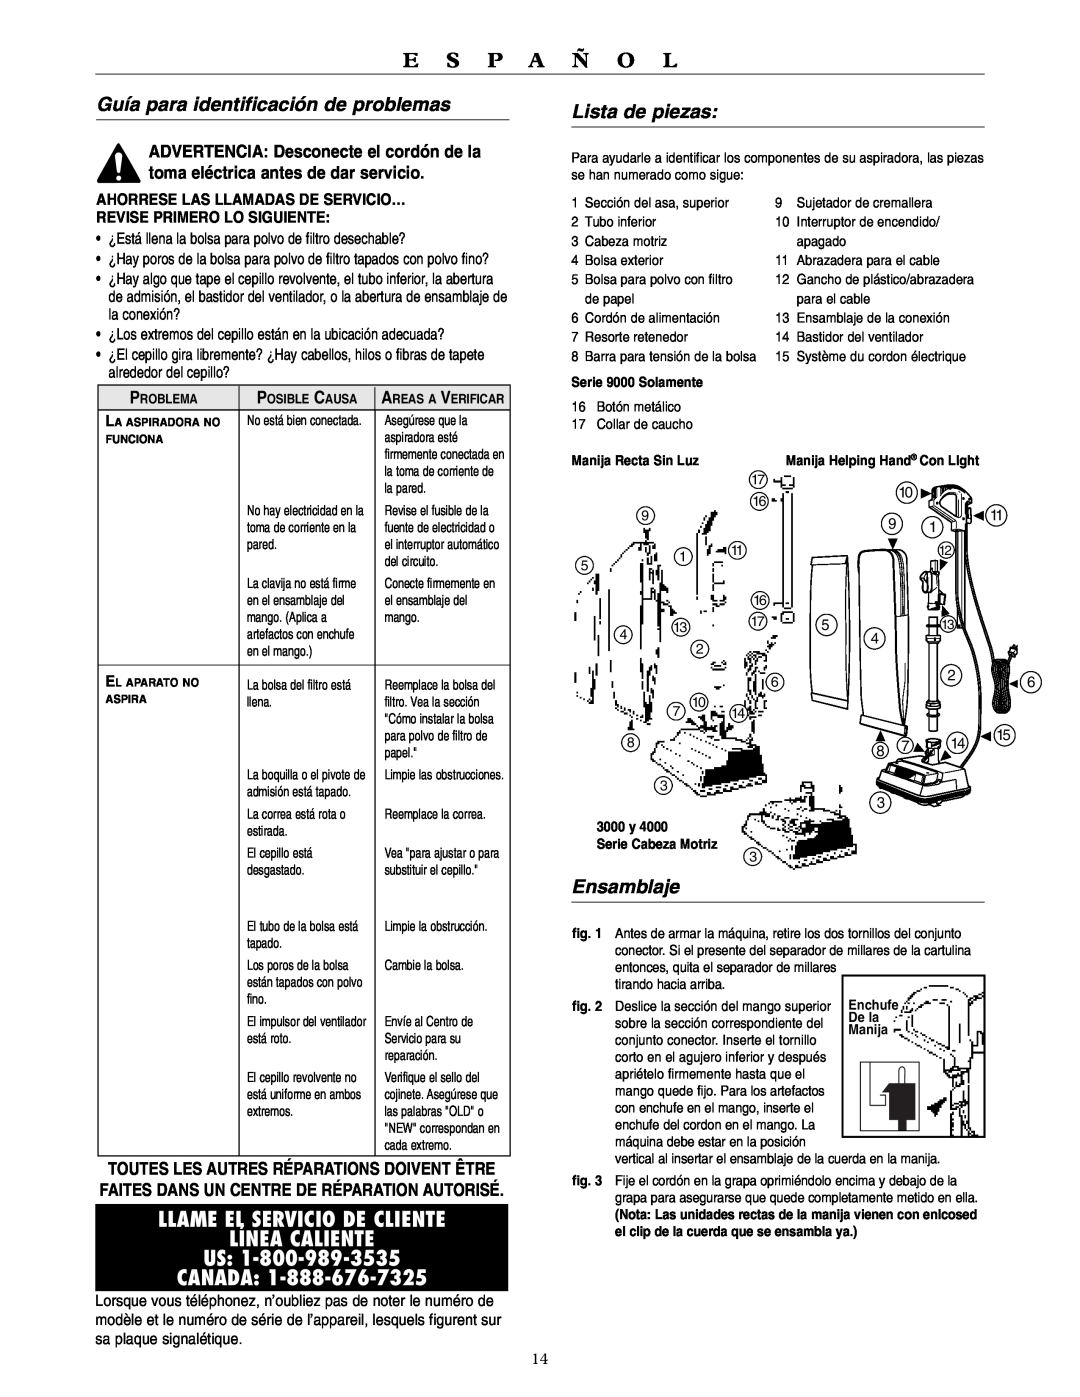 Oreck 2000 Llame El Servicio De Cliente Línea Caliente Us, Canada, Guía para identificación de problemas, Lista de piezas 